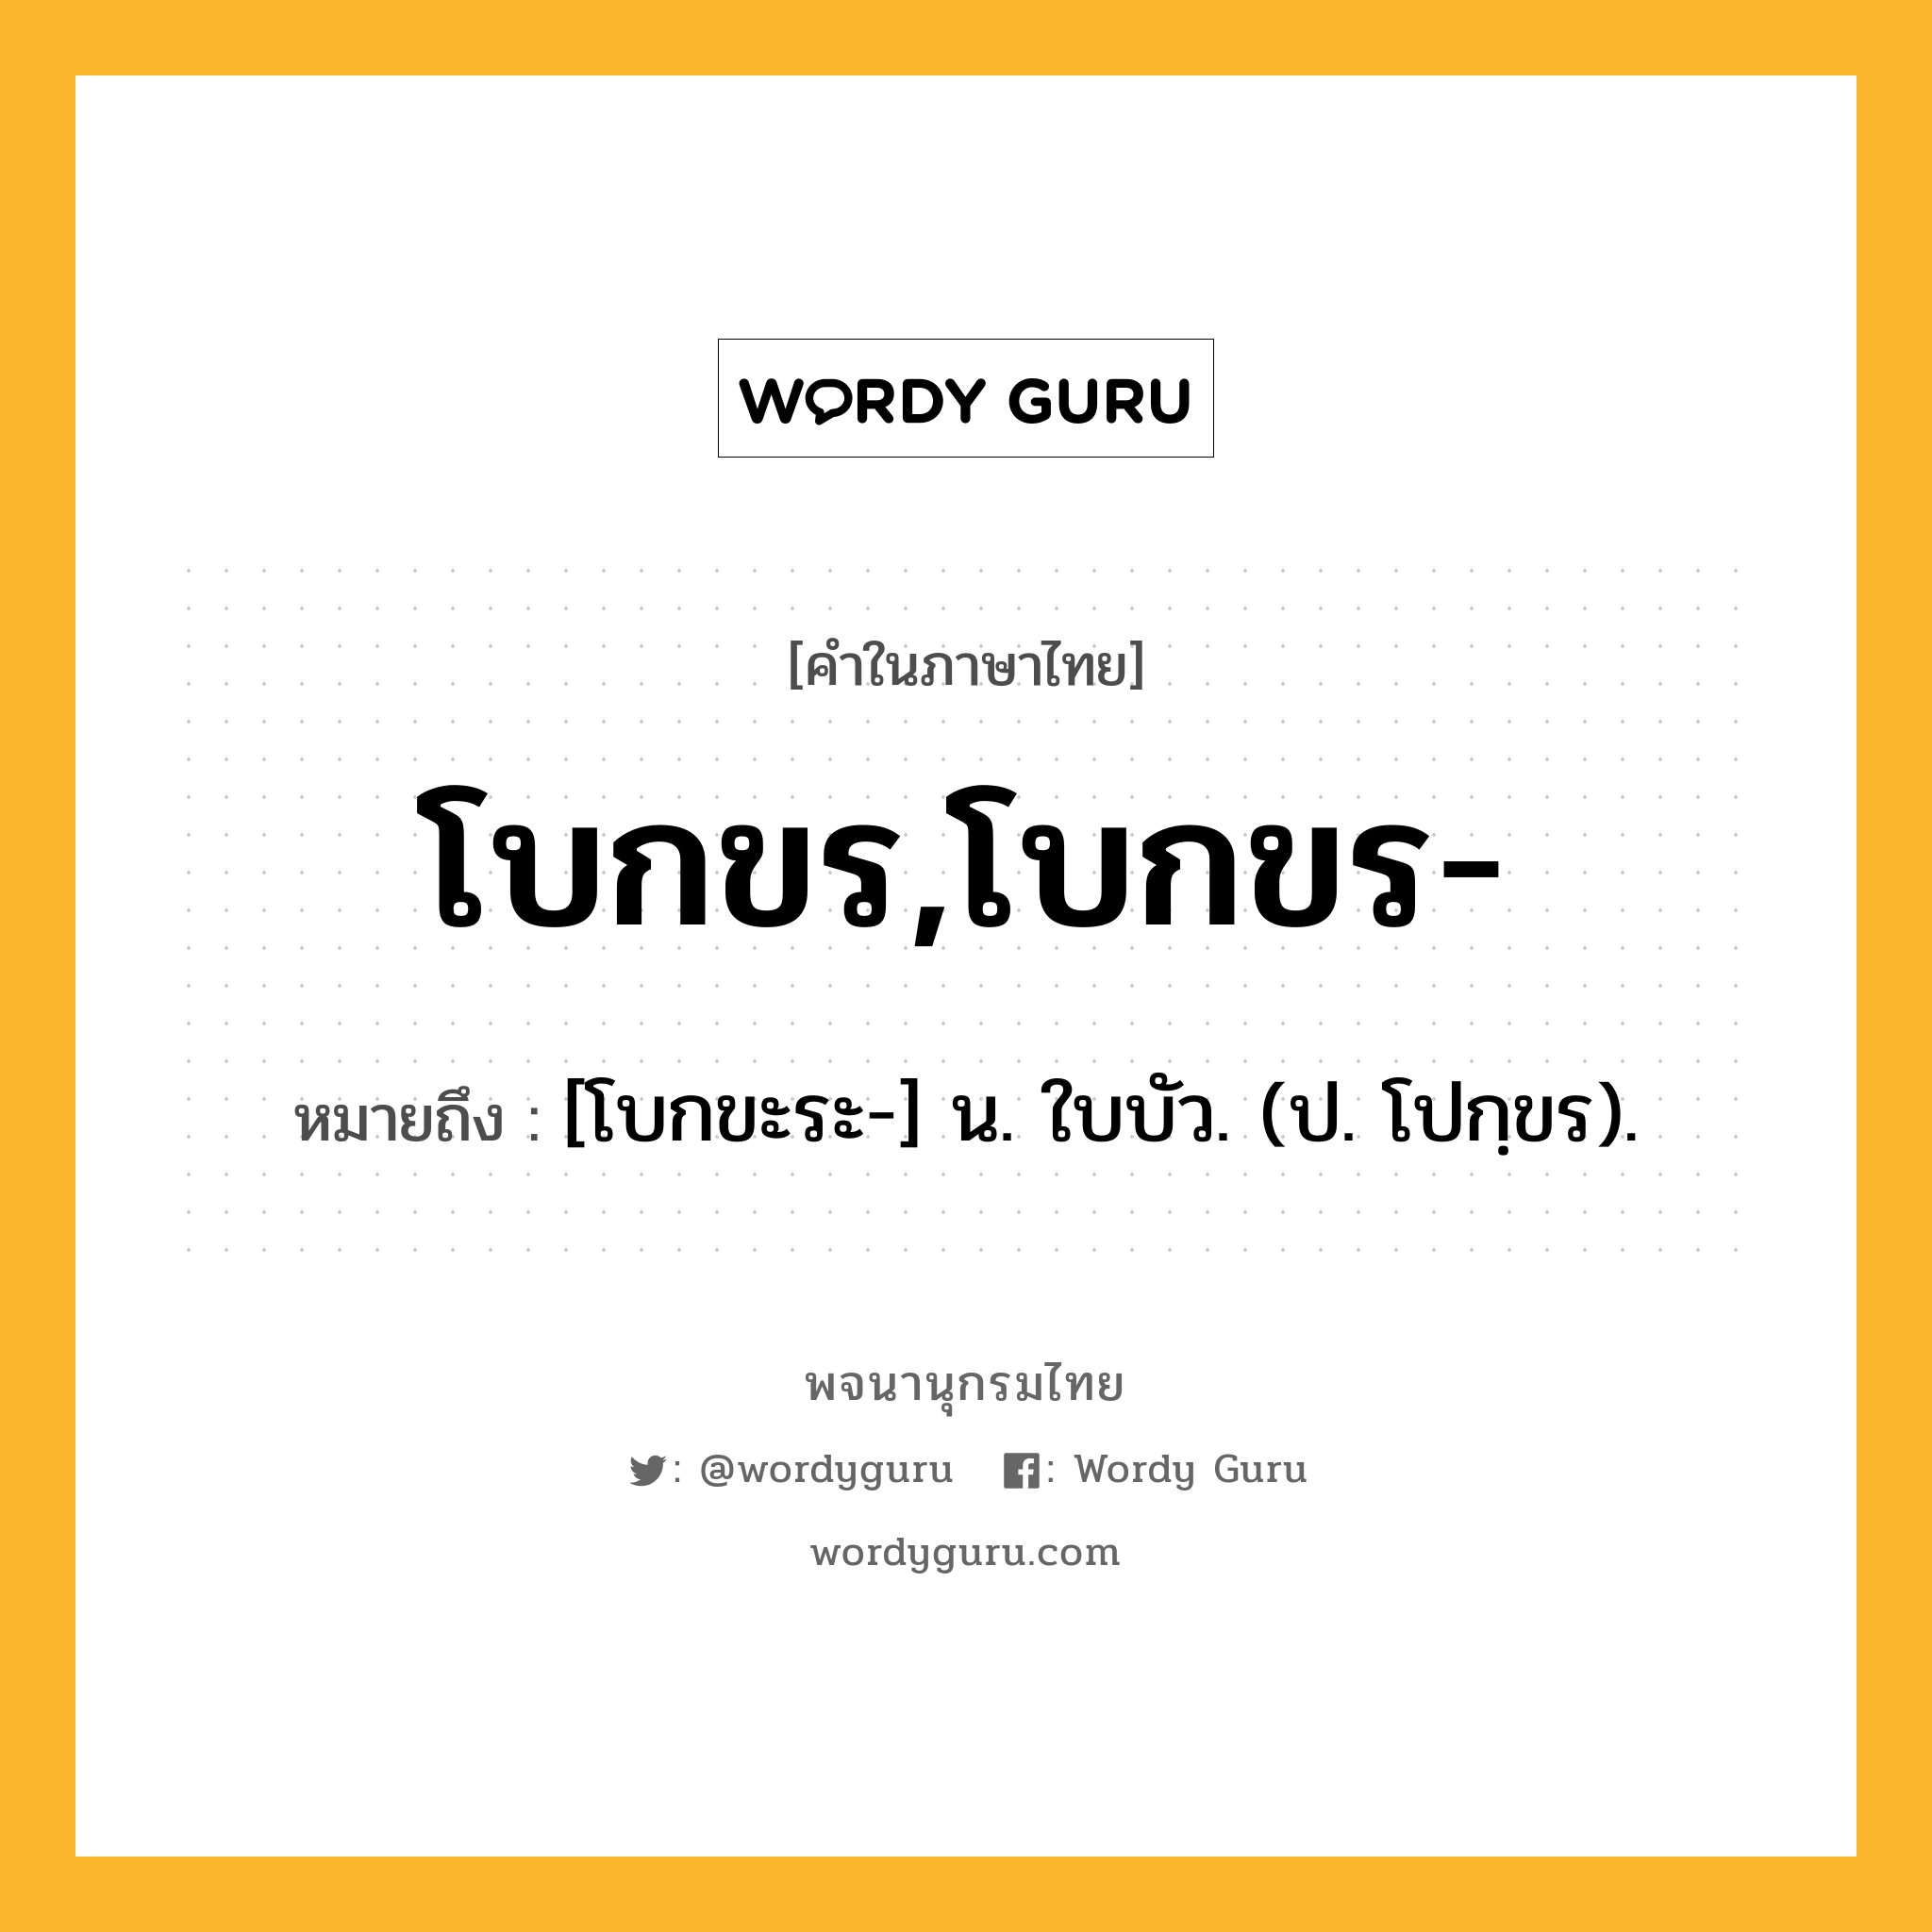 โบกขร,โบกขร- ความหมาย หมายถึงอะไร?, คำในภาษาไทย โบกขร,โบกขร- หมายถึง [โบกขะระ-] น. ใบบัว. (ป. โปกฺขร).